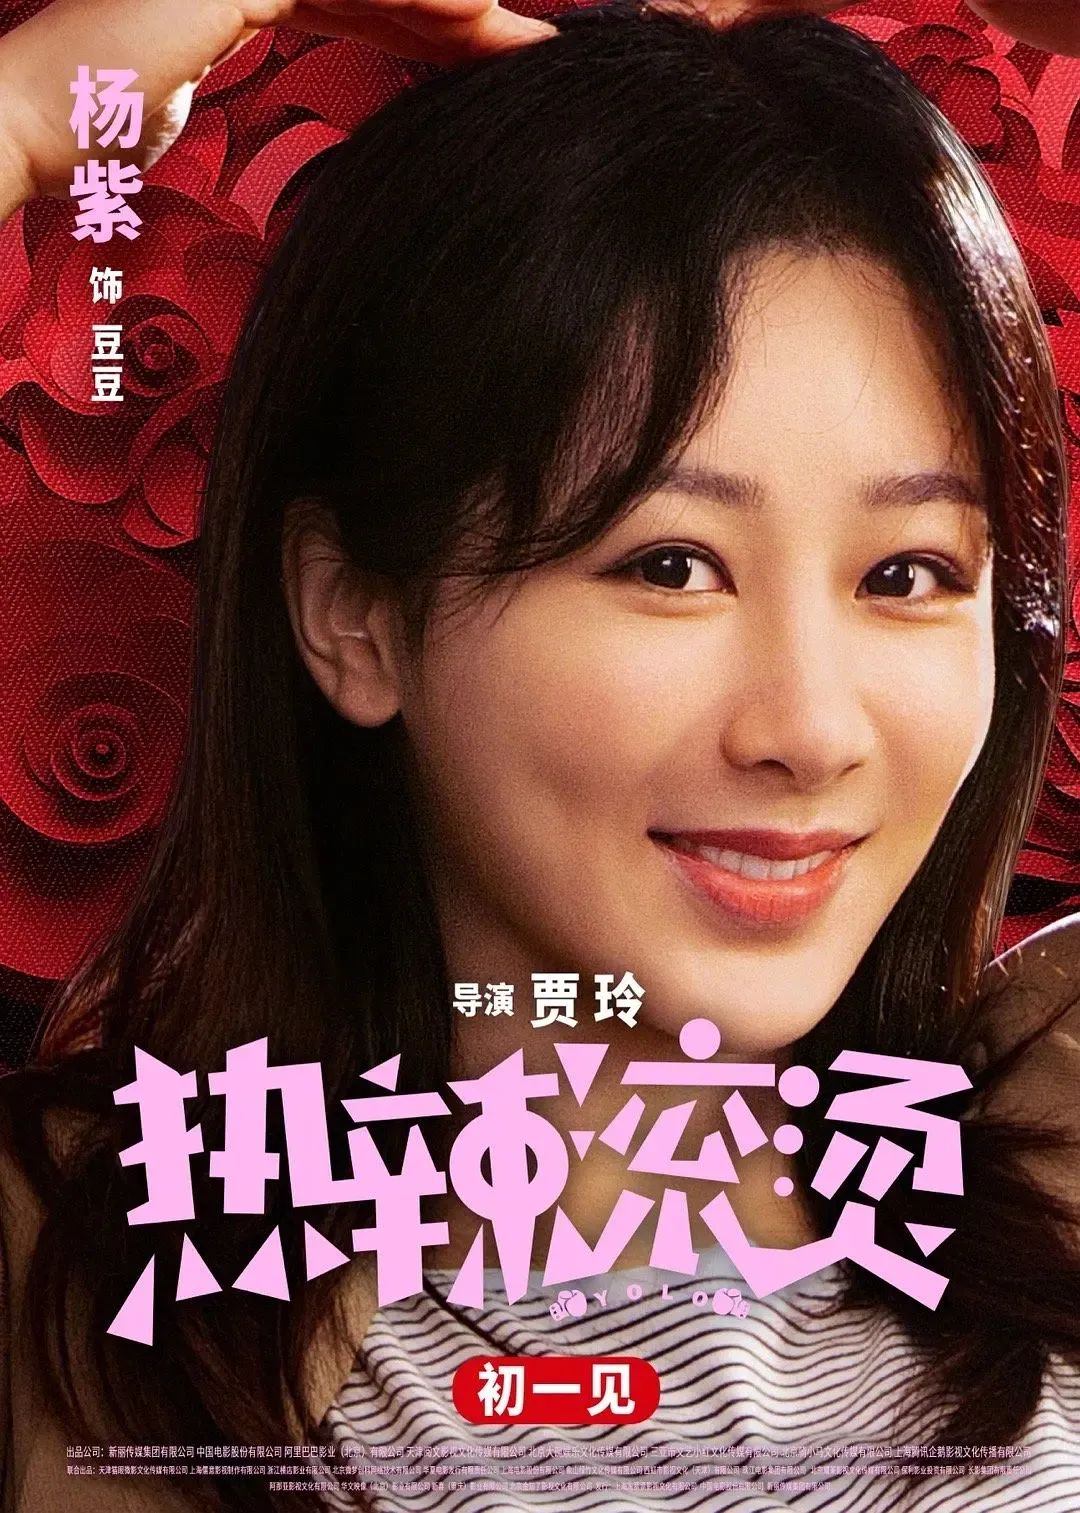 在接受《中国电影报道》的独家专访中,杨紫介绍了她在春节档电影